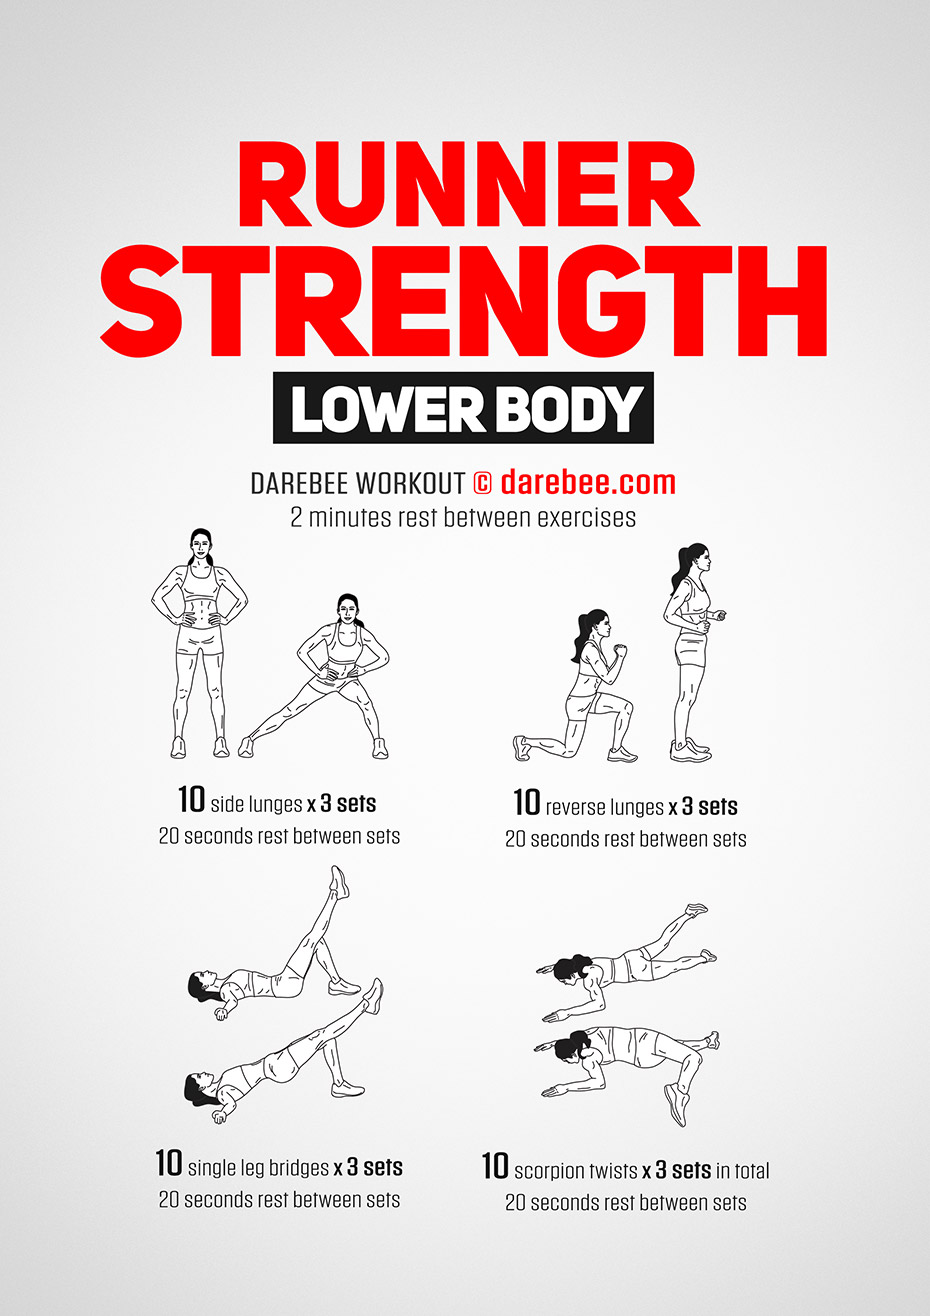 Runner Strength Workout